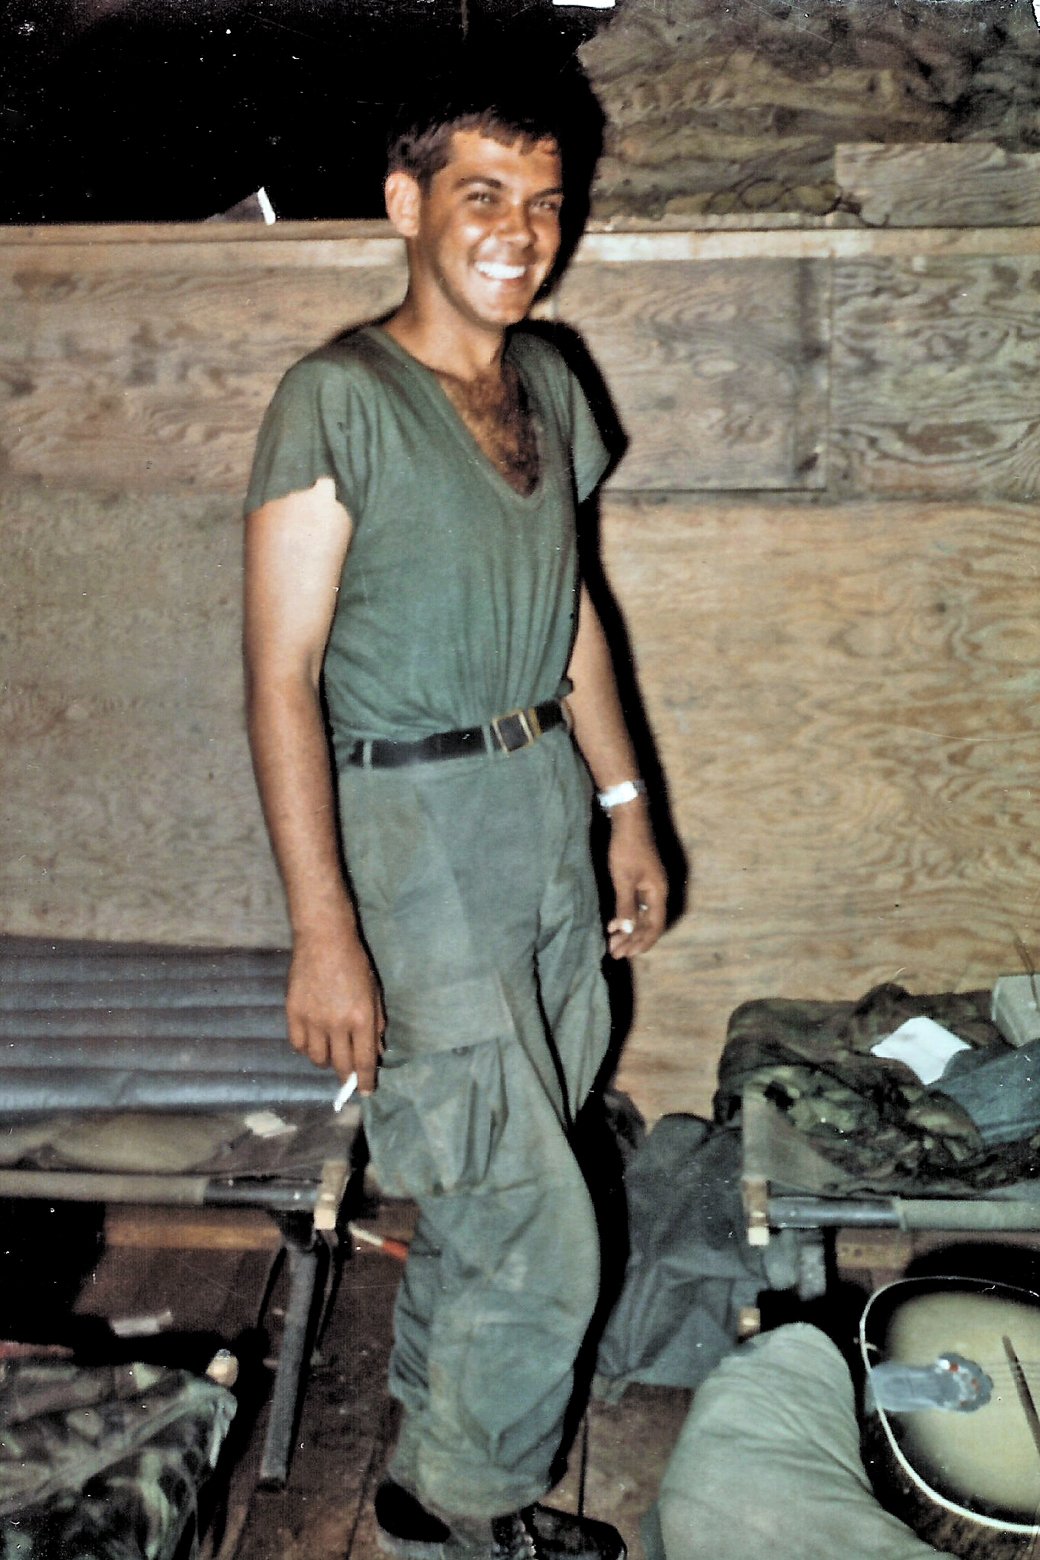 US soldier in vietnam 